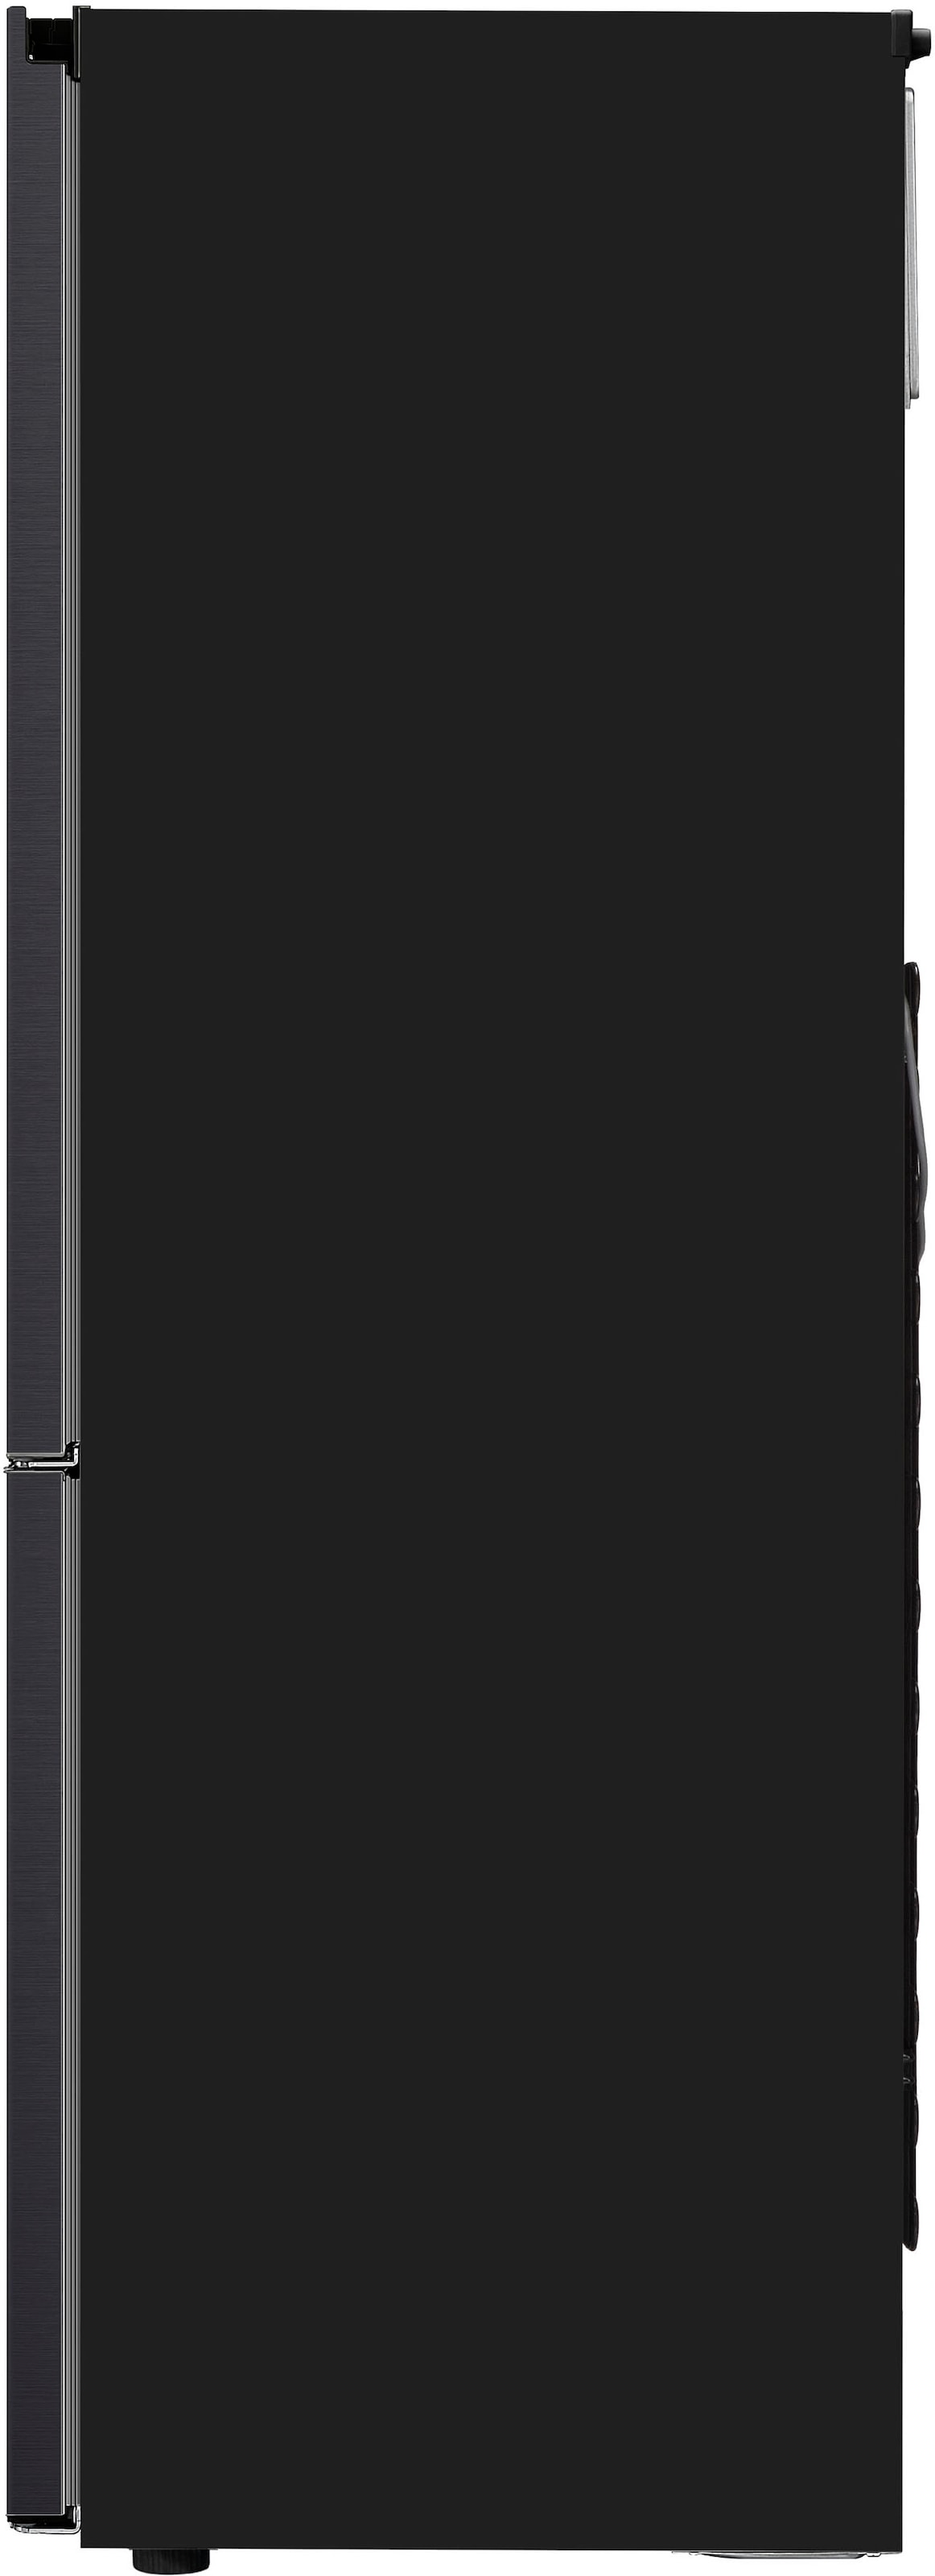 LG Kühl-/Gefrierkombination, GBB61PZGCN, 186 cm hoch, 59,5 cm breit online  bestellen